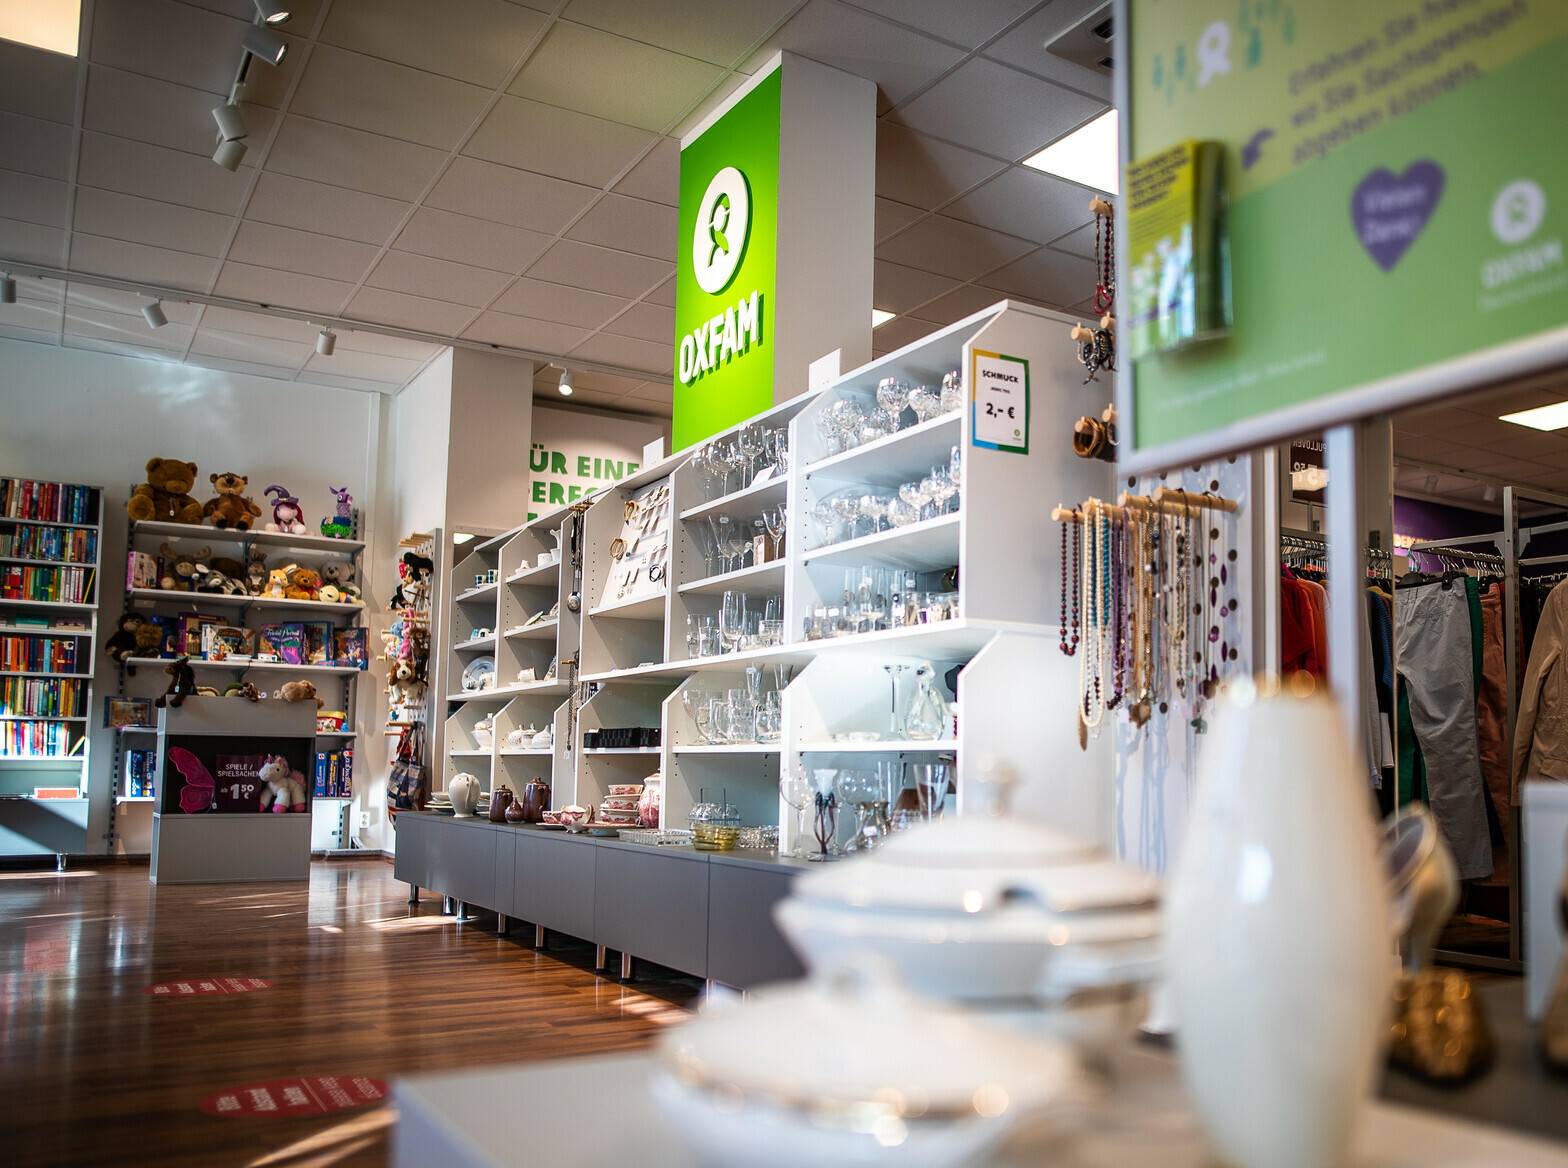 Sachspenden-Shop Oxfam sucht Verstärkung